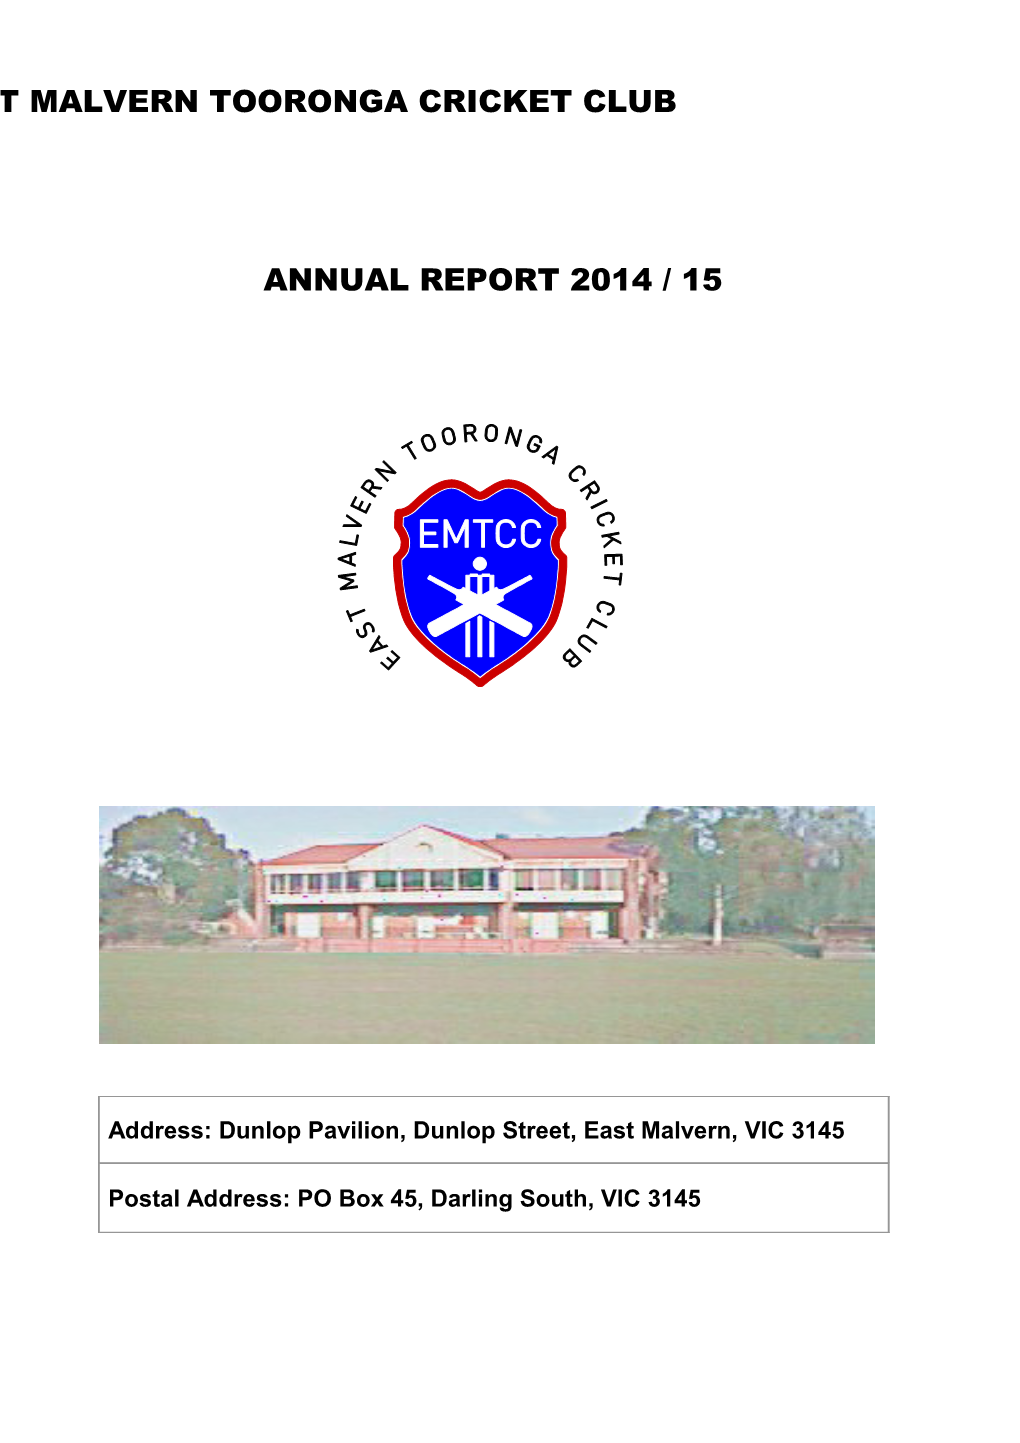 East Malvern Tooronga Cricket Club